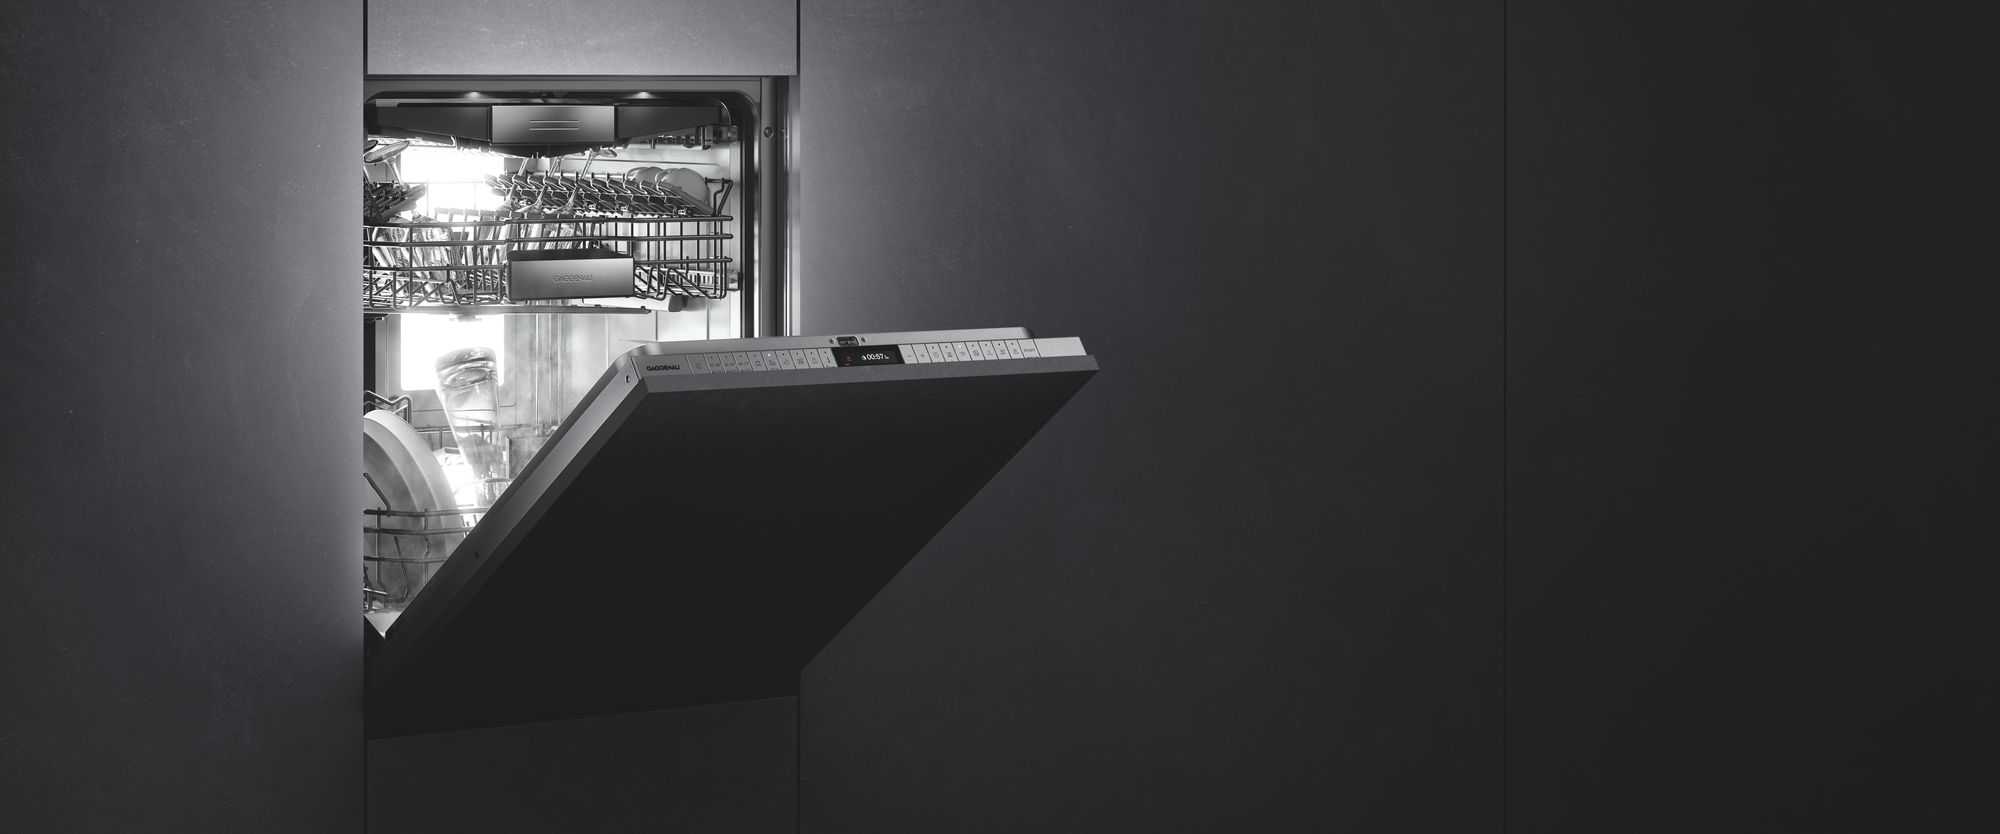 Gaggenau Dishwashers by FCI London